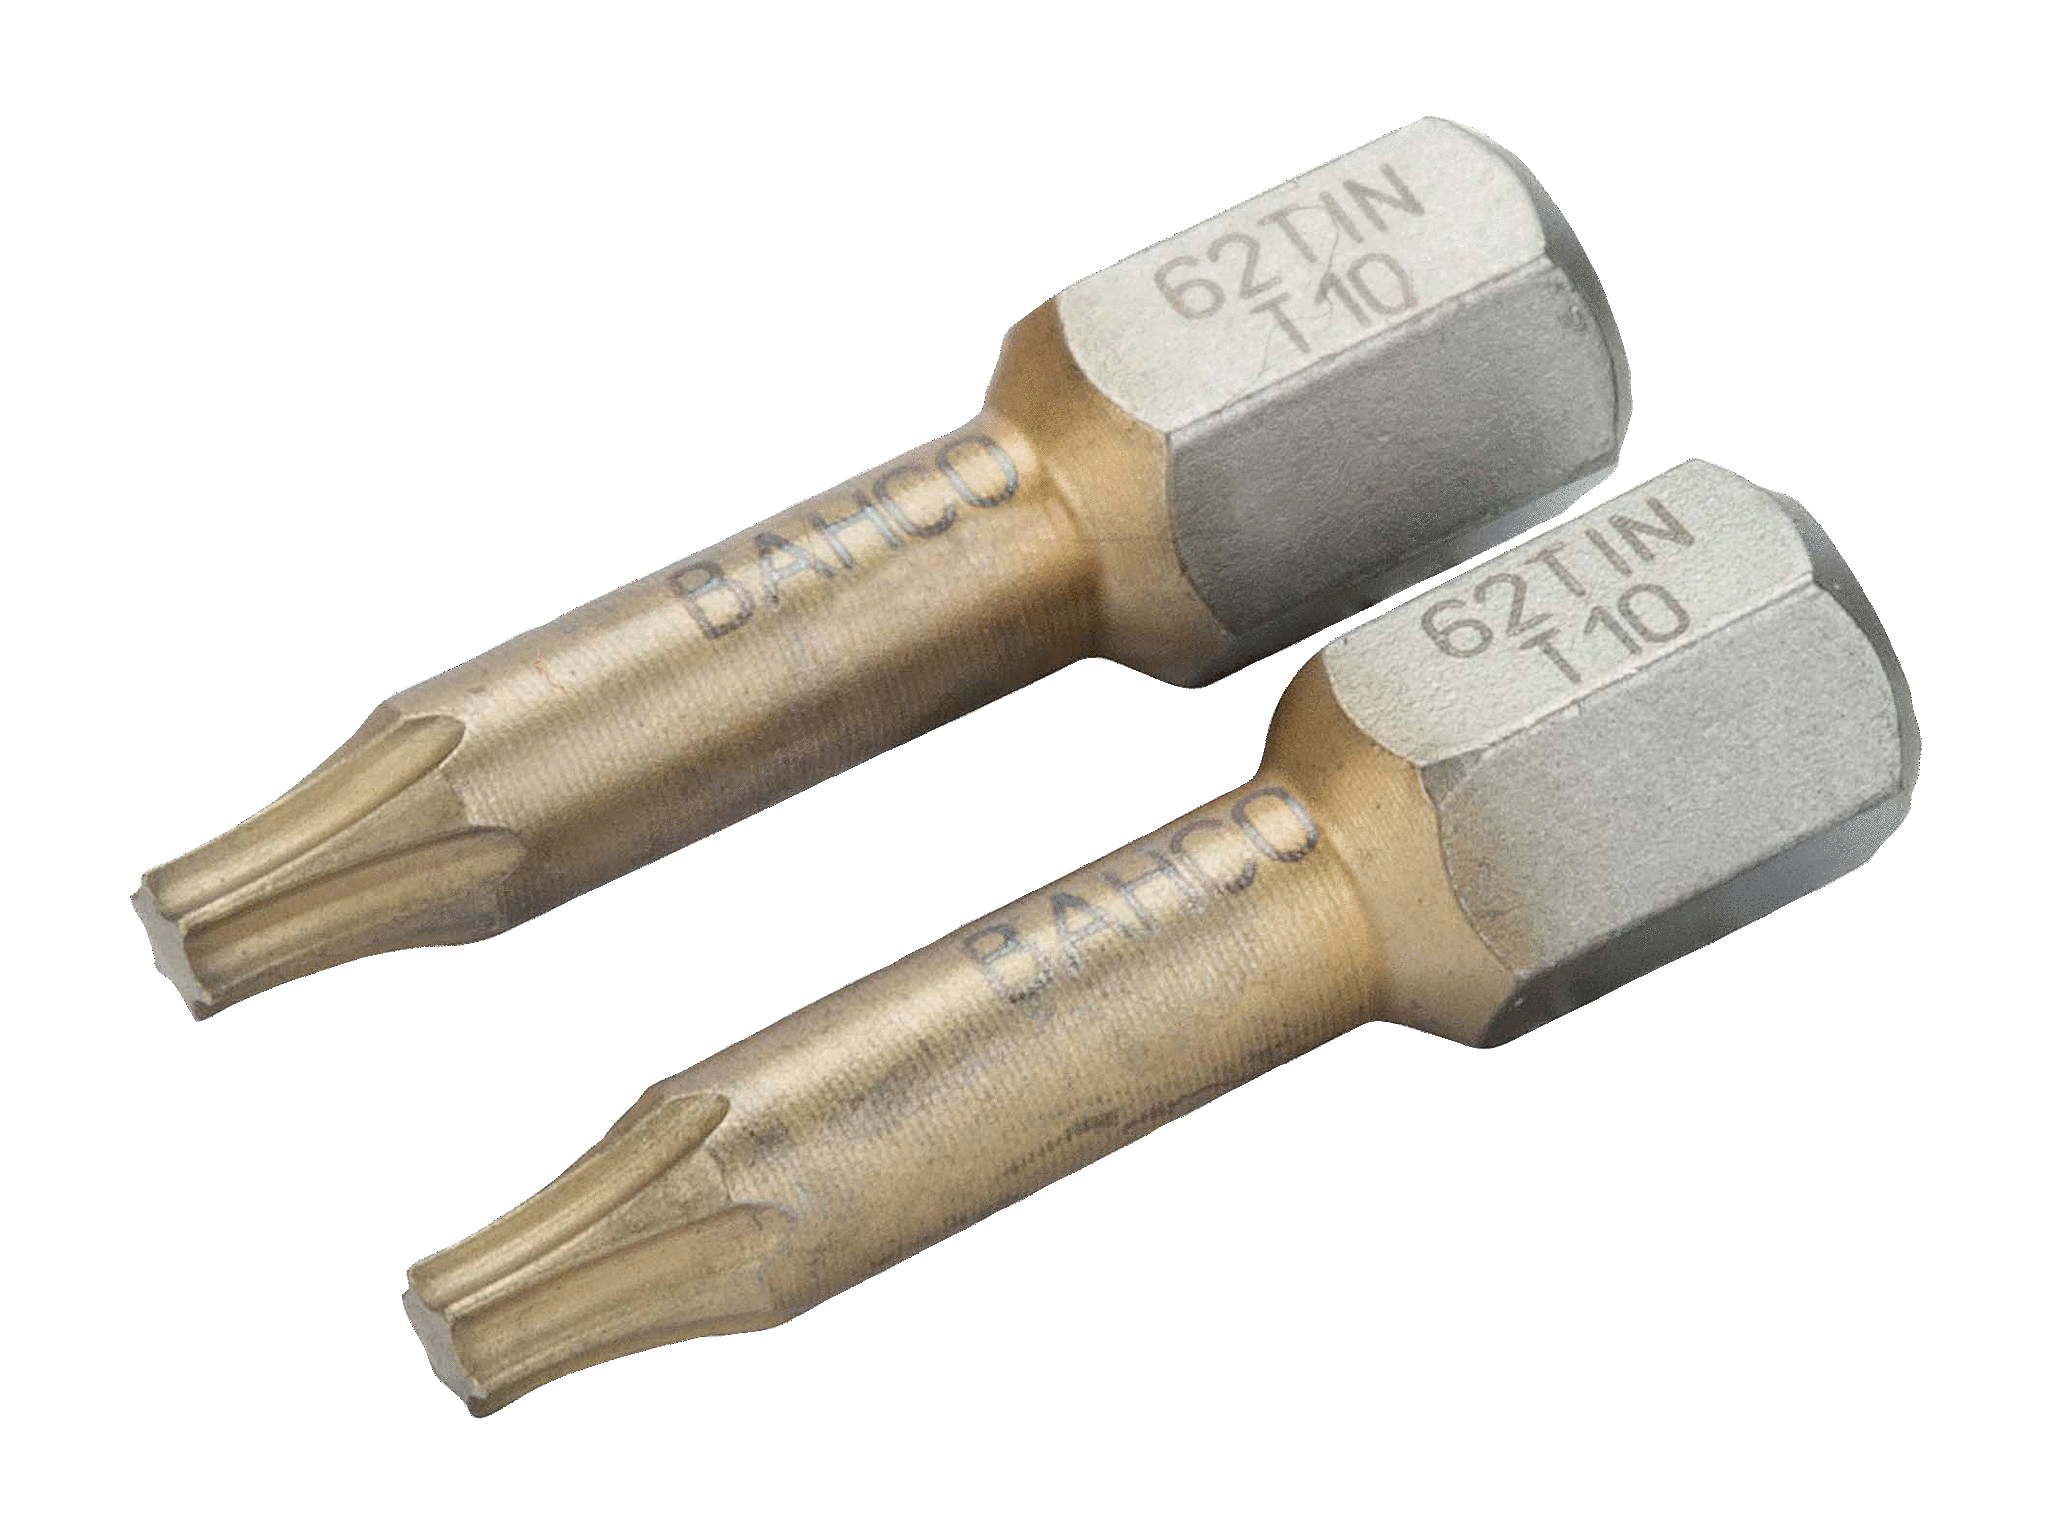 картинка Торсионные биты с покрытием из нитрида титана для отверток Torx®, 25 мм BAHCO 62TIN/T30 от магазина "Элит-инструмент"